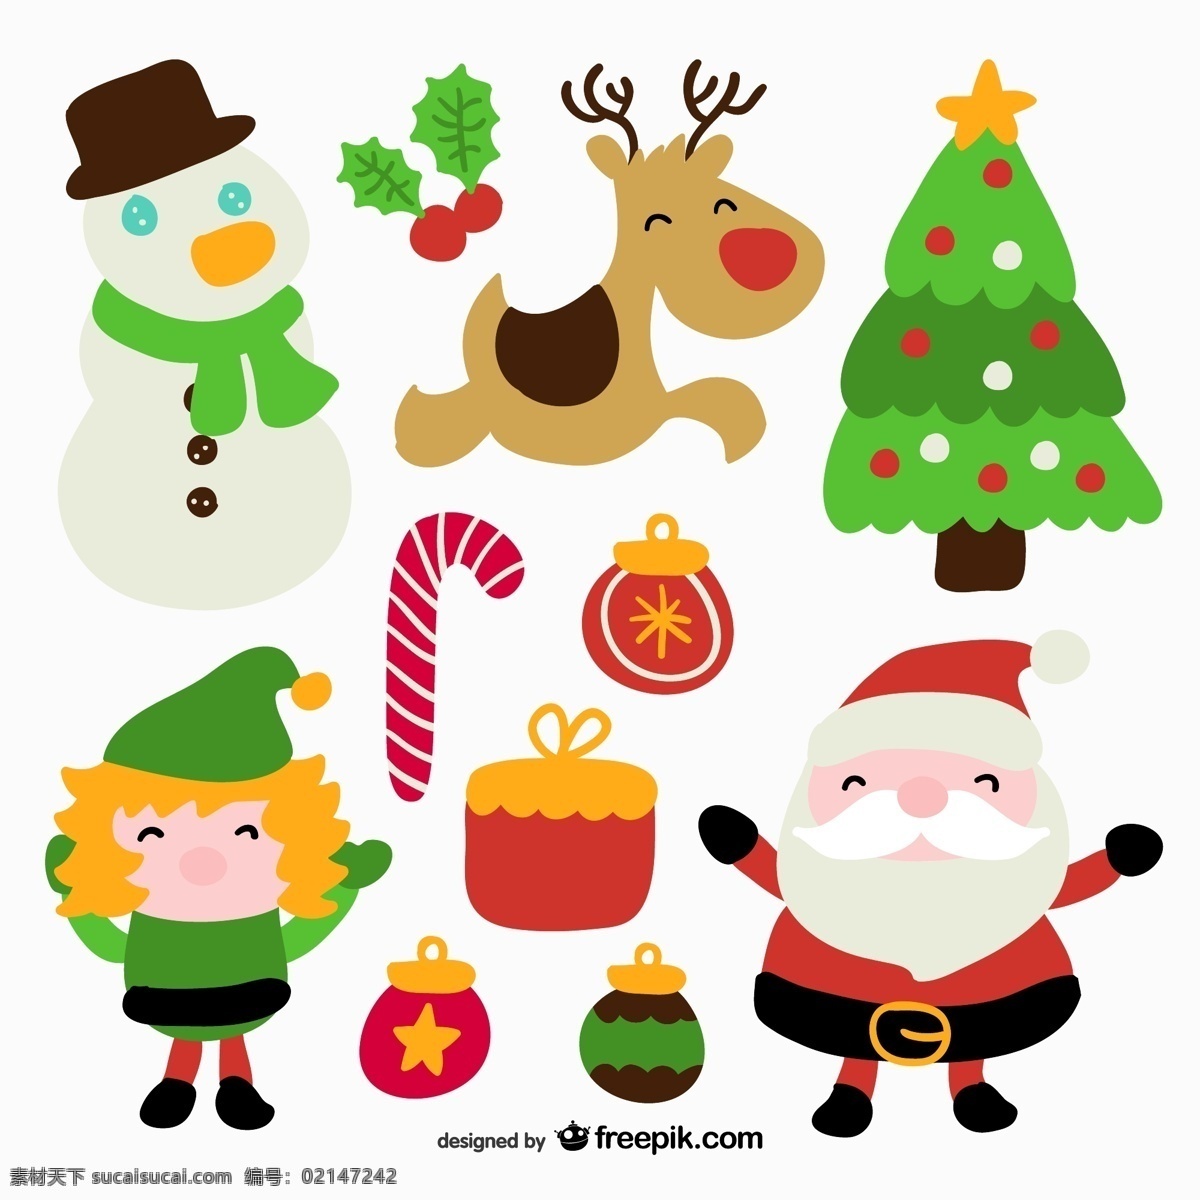 圣诞节图标集 圣诞节 礼品 图标 装饰品 糖果 圣诞老人 圣诞 驯鹿 精灵 槲寄生 甘蔗 饰品